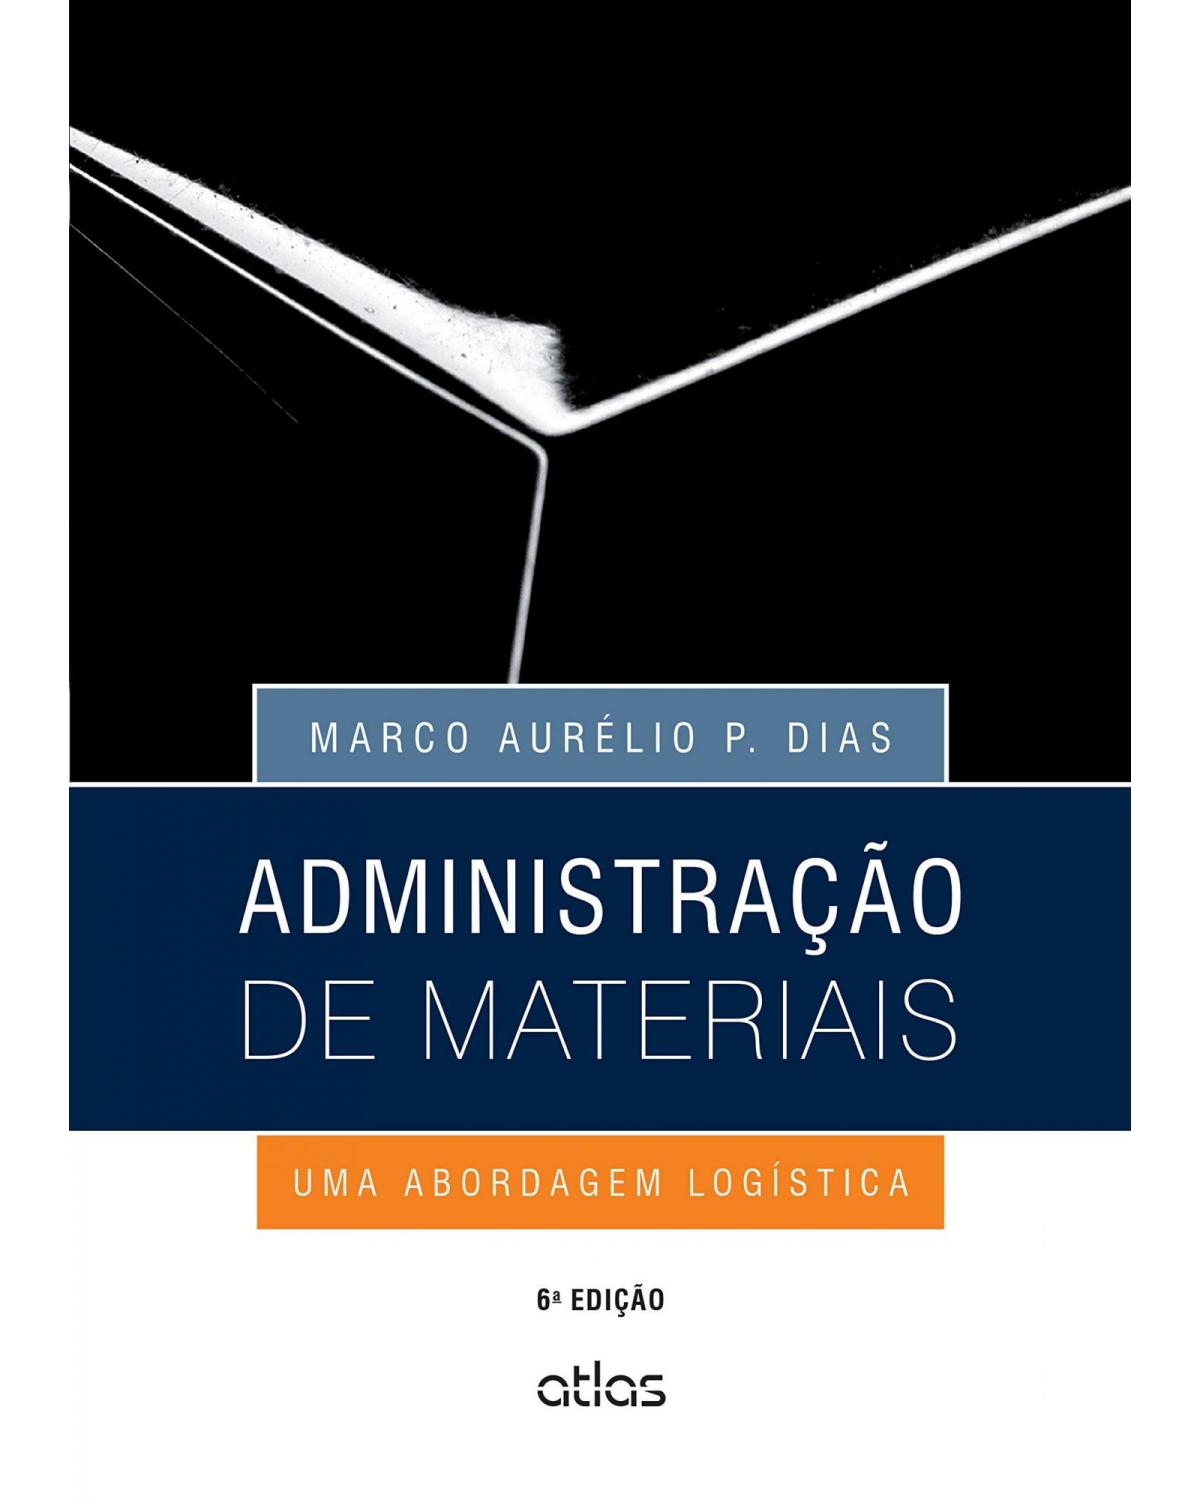 Administração de materiais - Uma abordagem logística - 6ª Edição | 2015